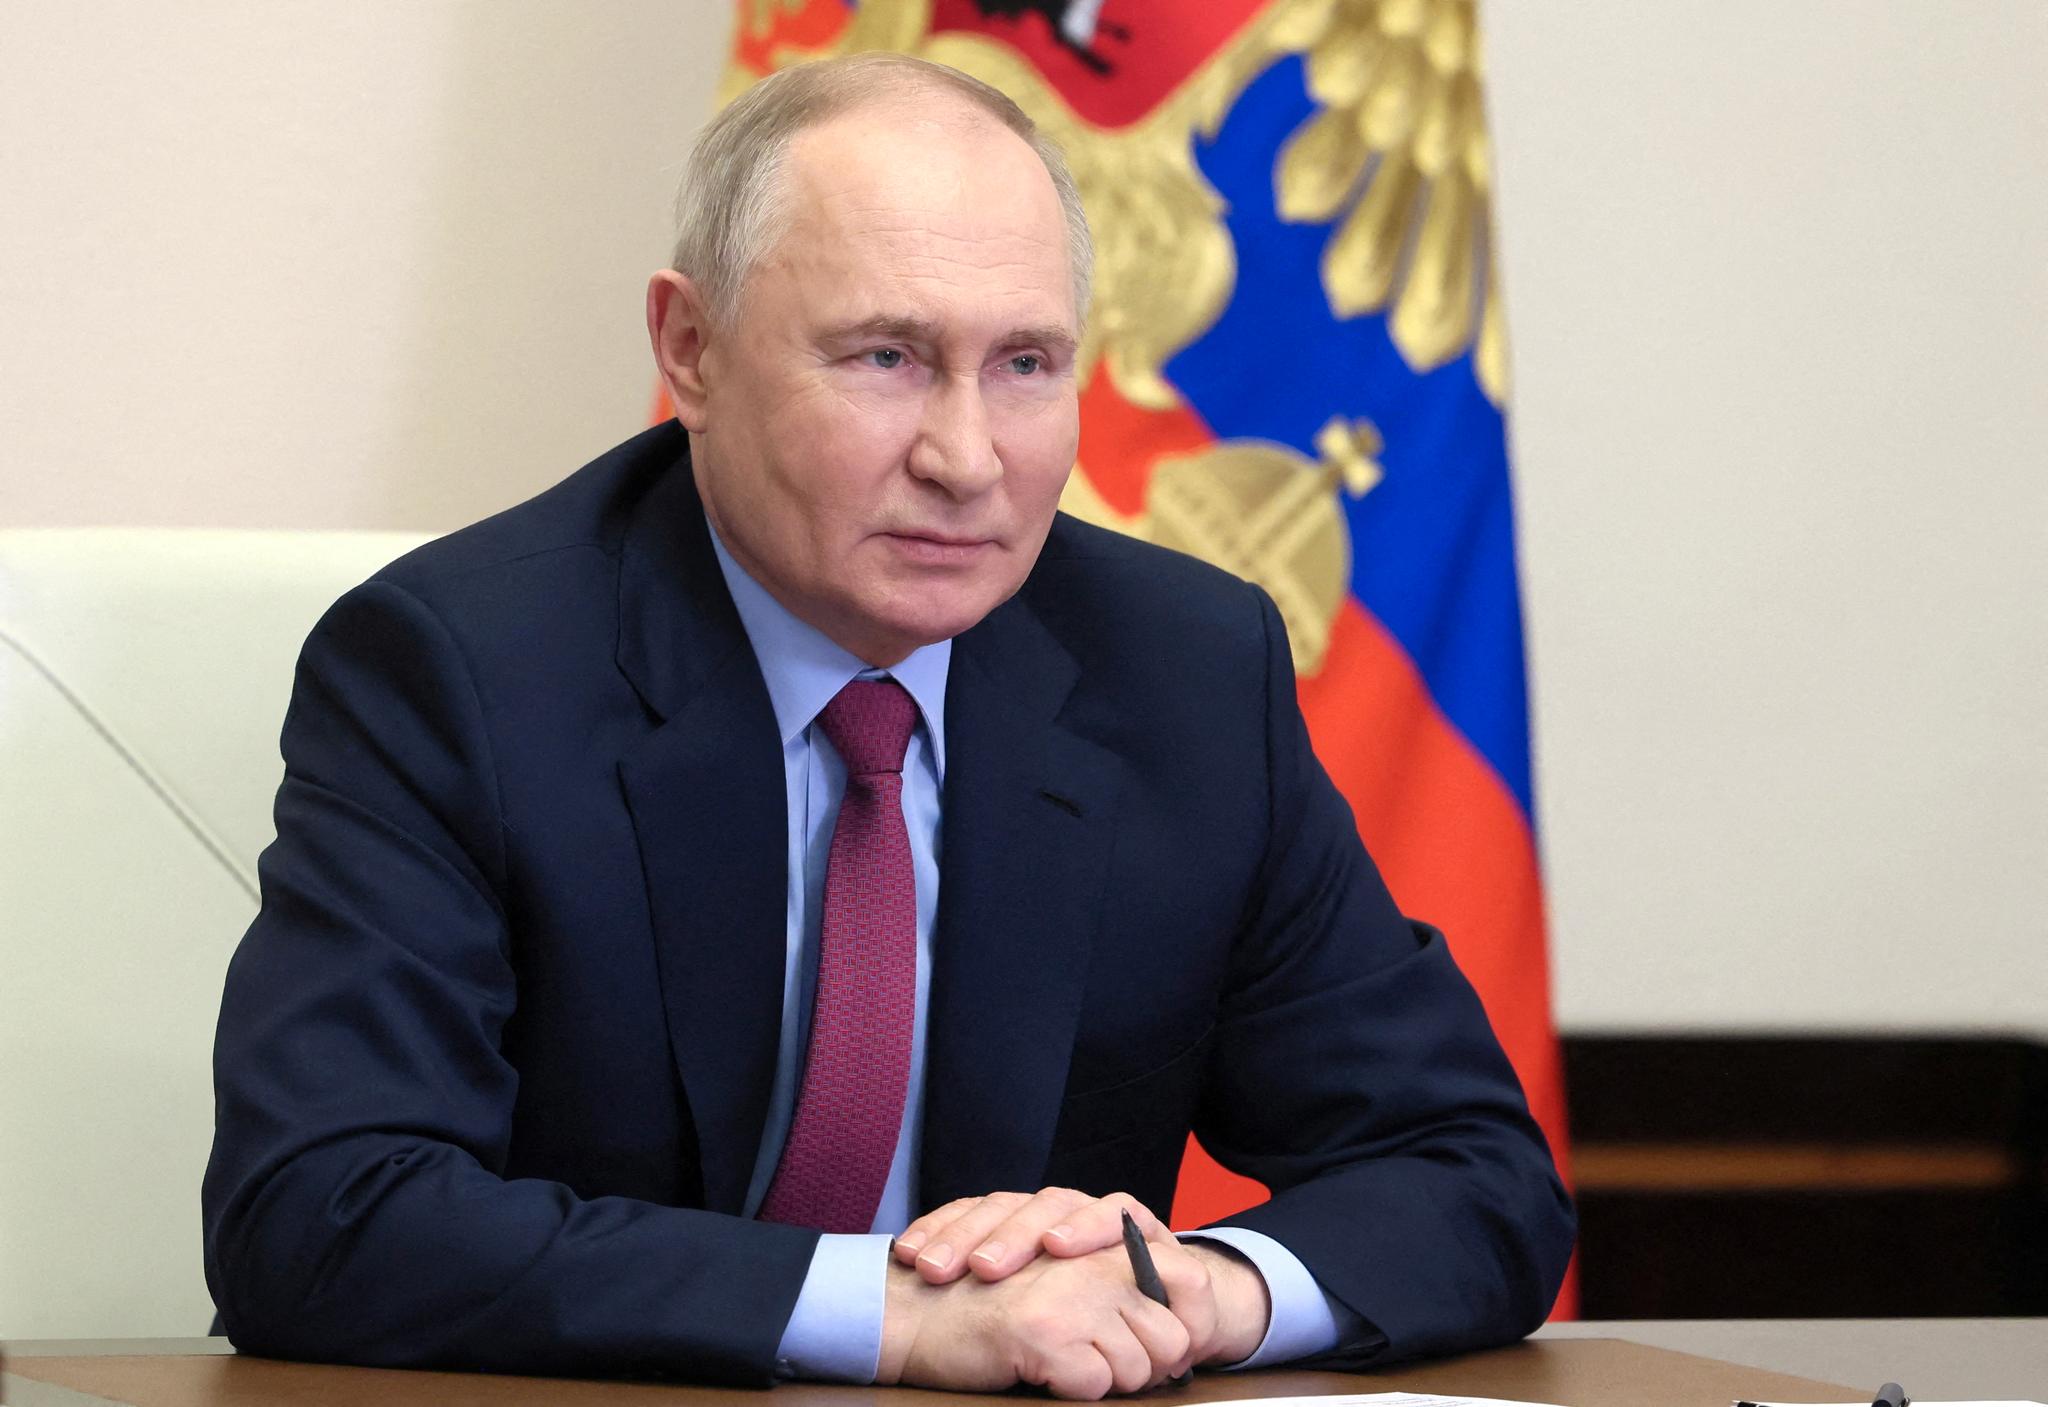 President Putin har sitter som russisk president siden 1999, inkludert en periode da han var Russlands statsminister.